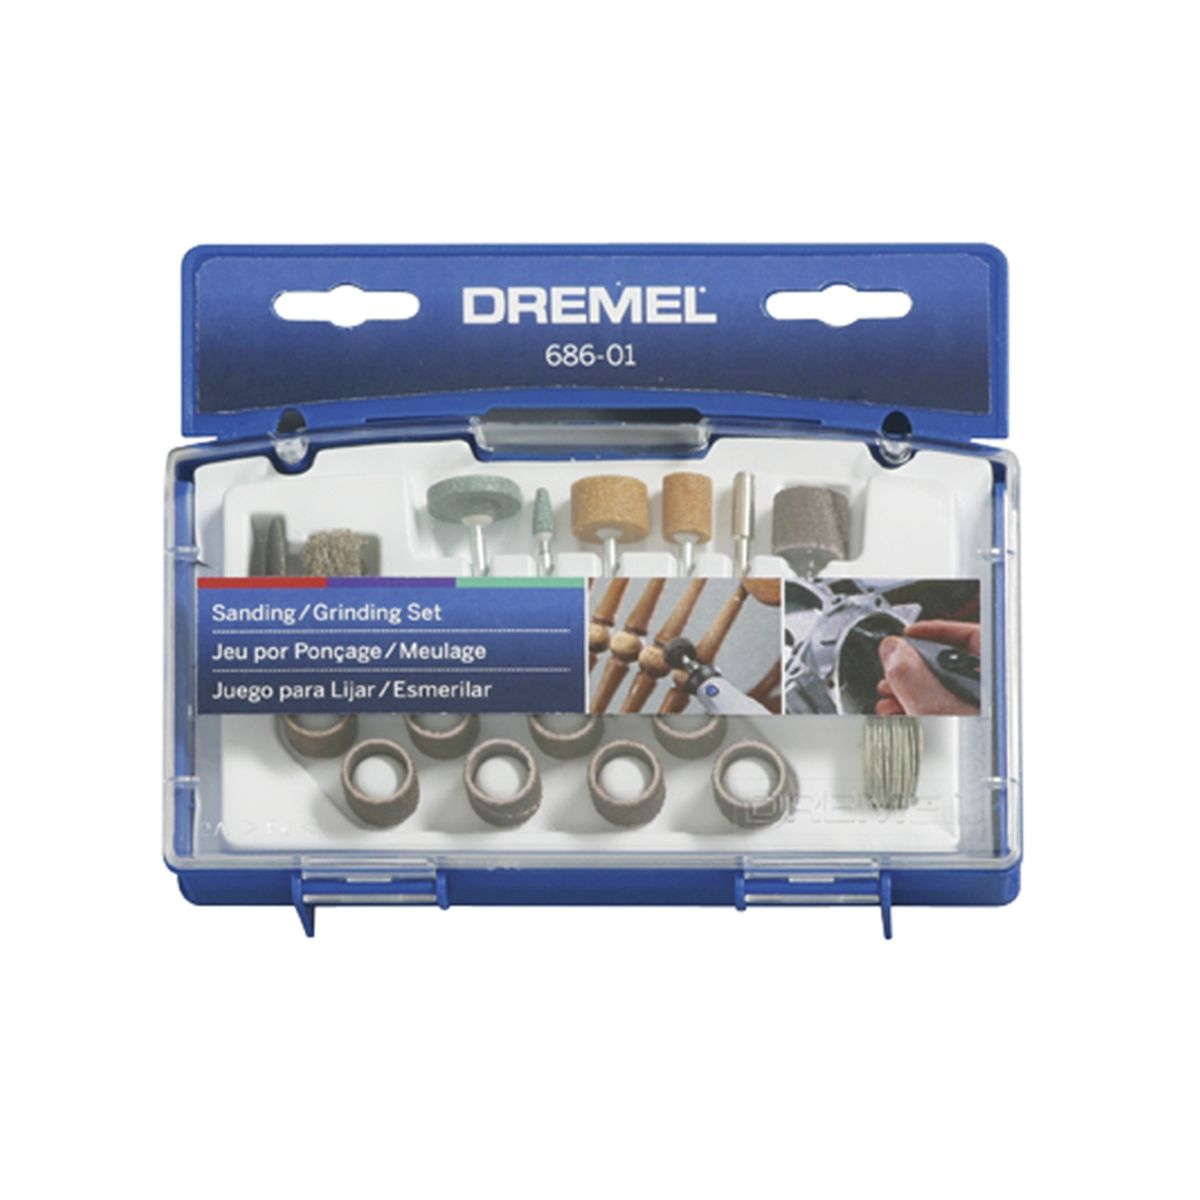 Batería de 7.2 voltios 3500mAh compatible con Dremel 7700-01 y Dremel  7700-02 Dremel 757-01 Dremel 7.2 voltios batería (no compatible con Dremel  770